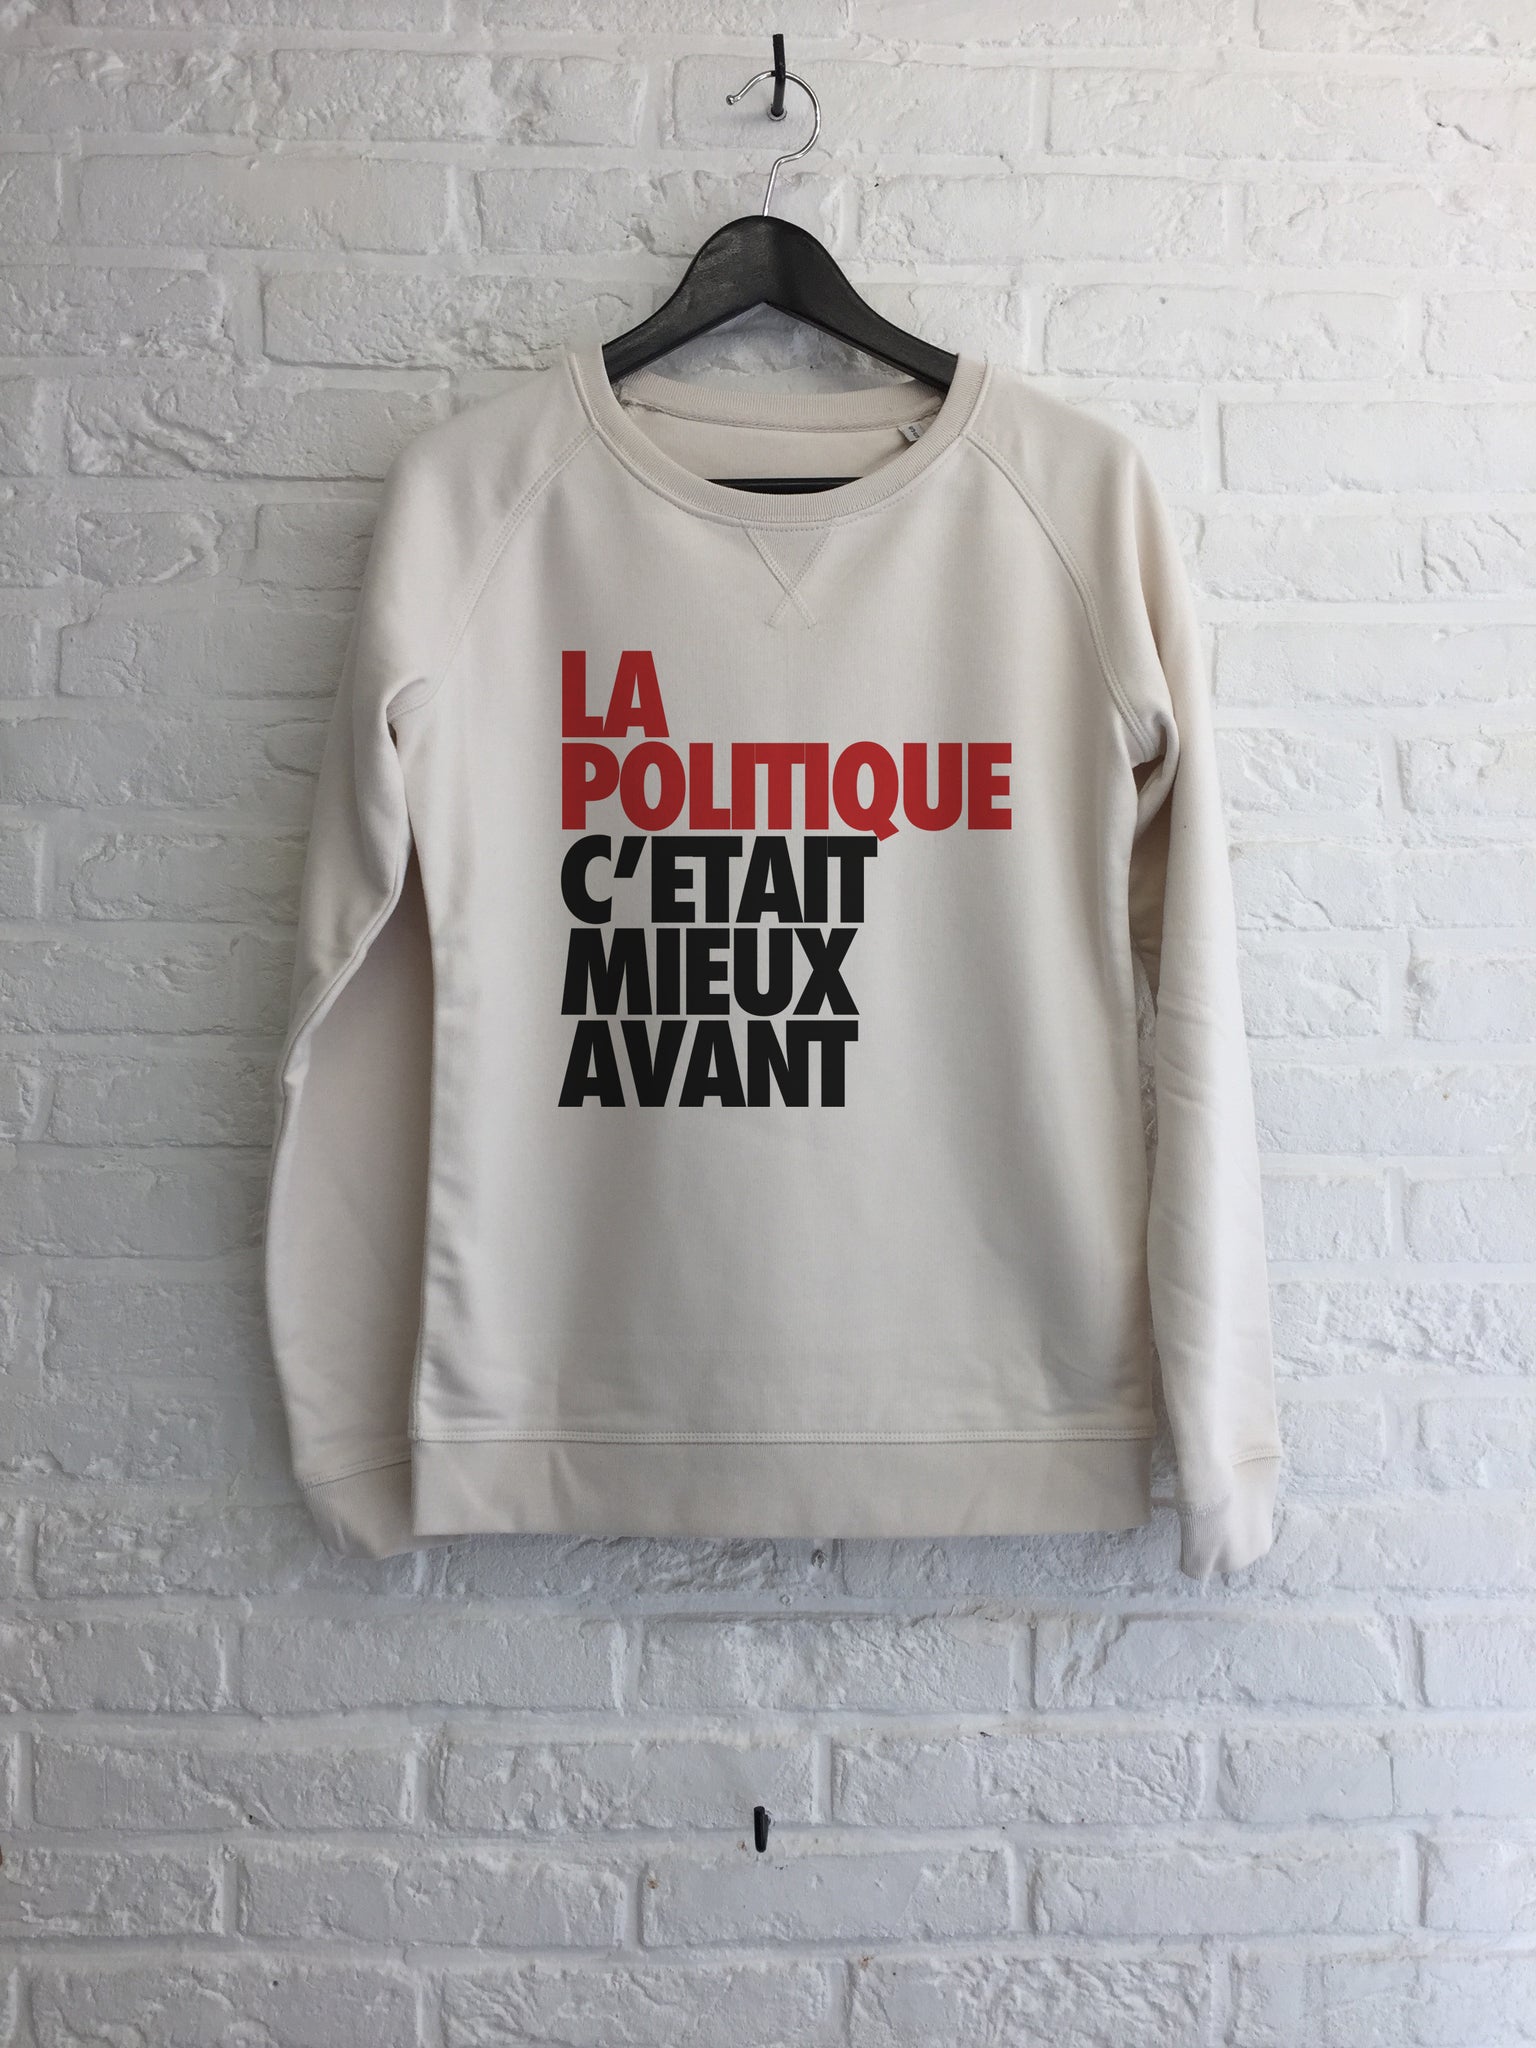 La politique c'était mieux avant - Sweat - Femme-Sweat shirts-Atelier Amelot